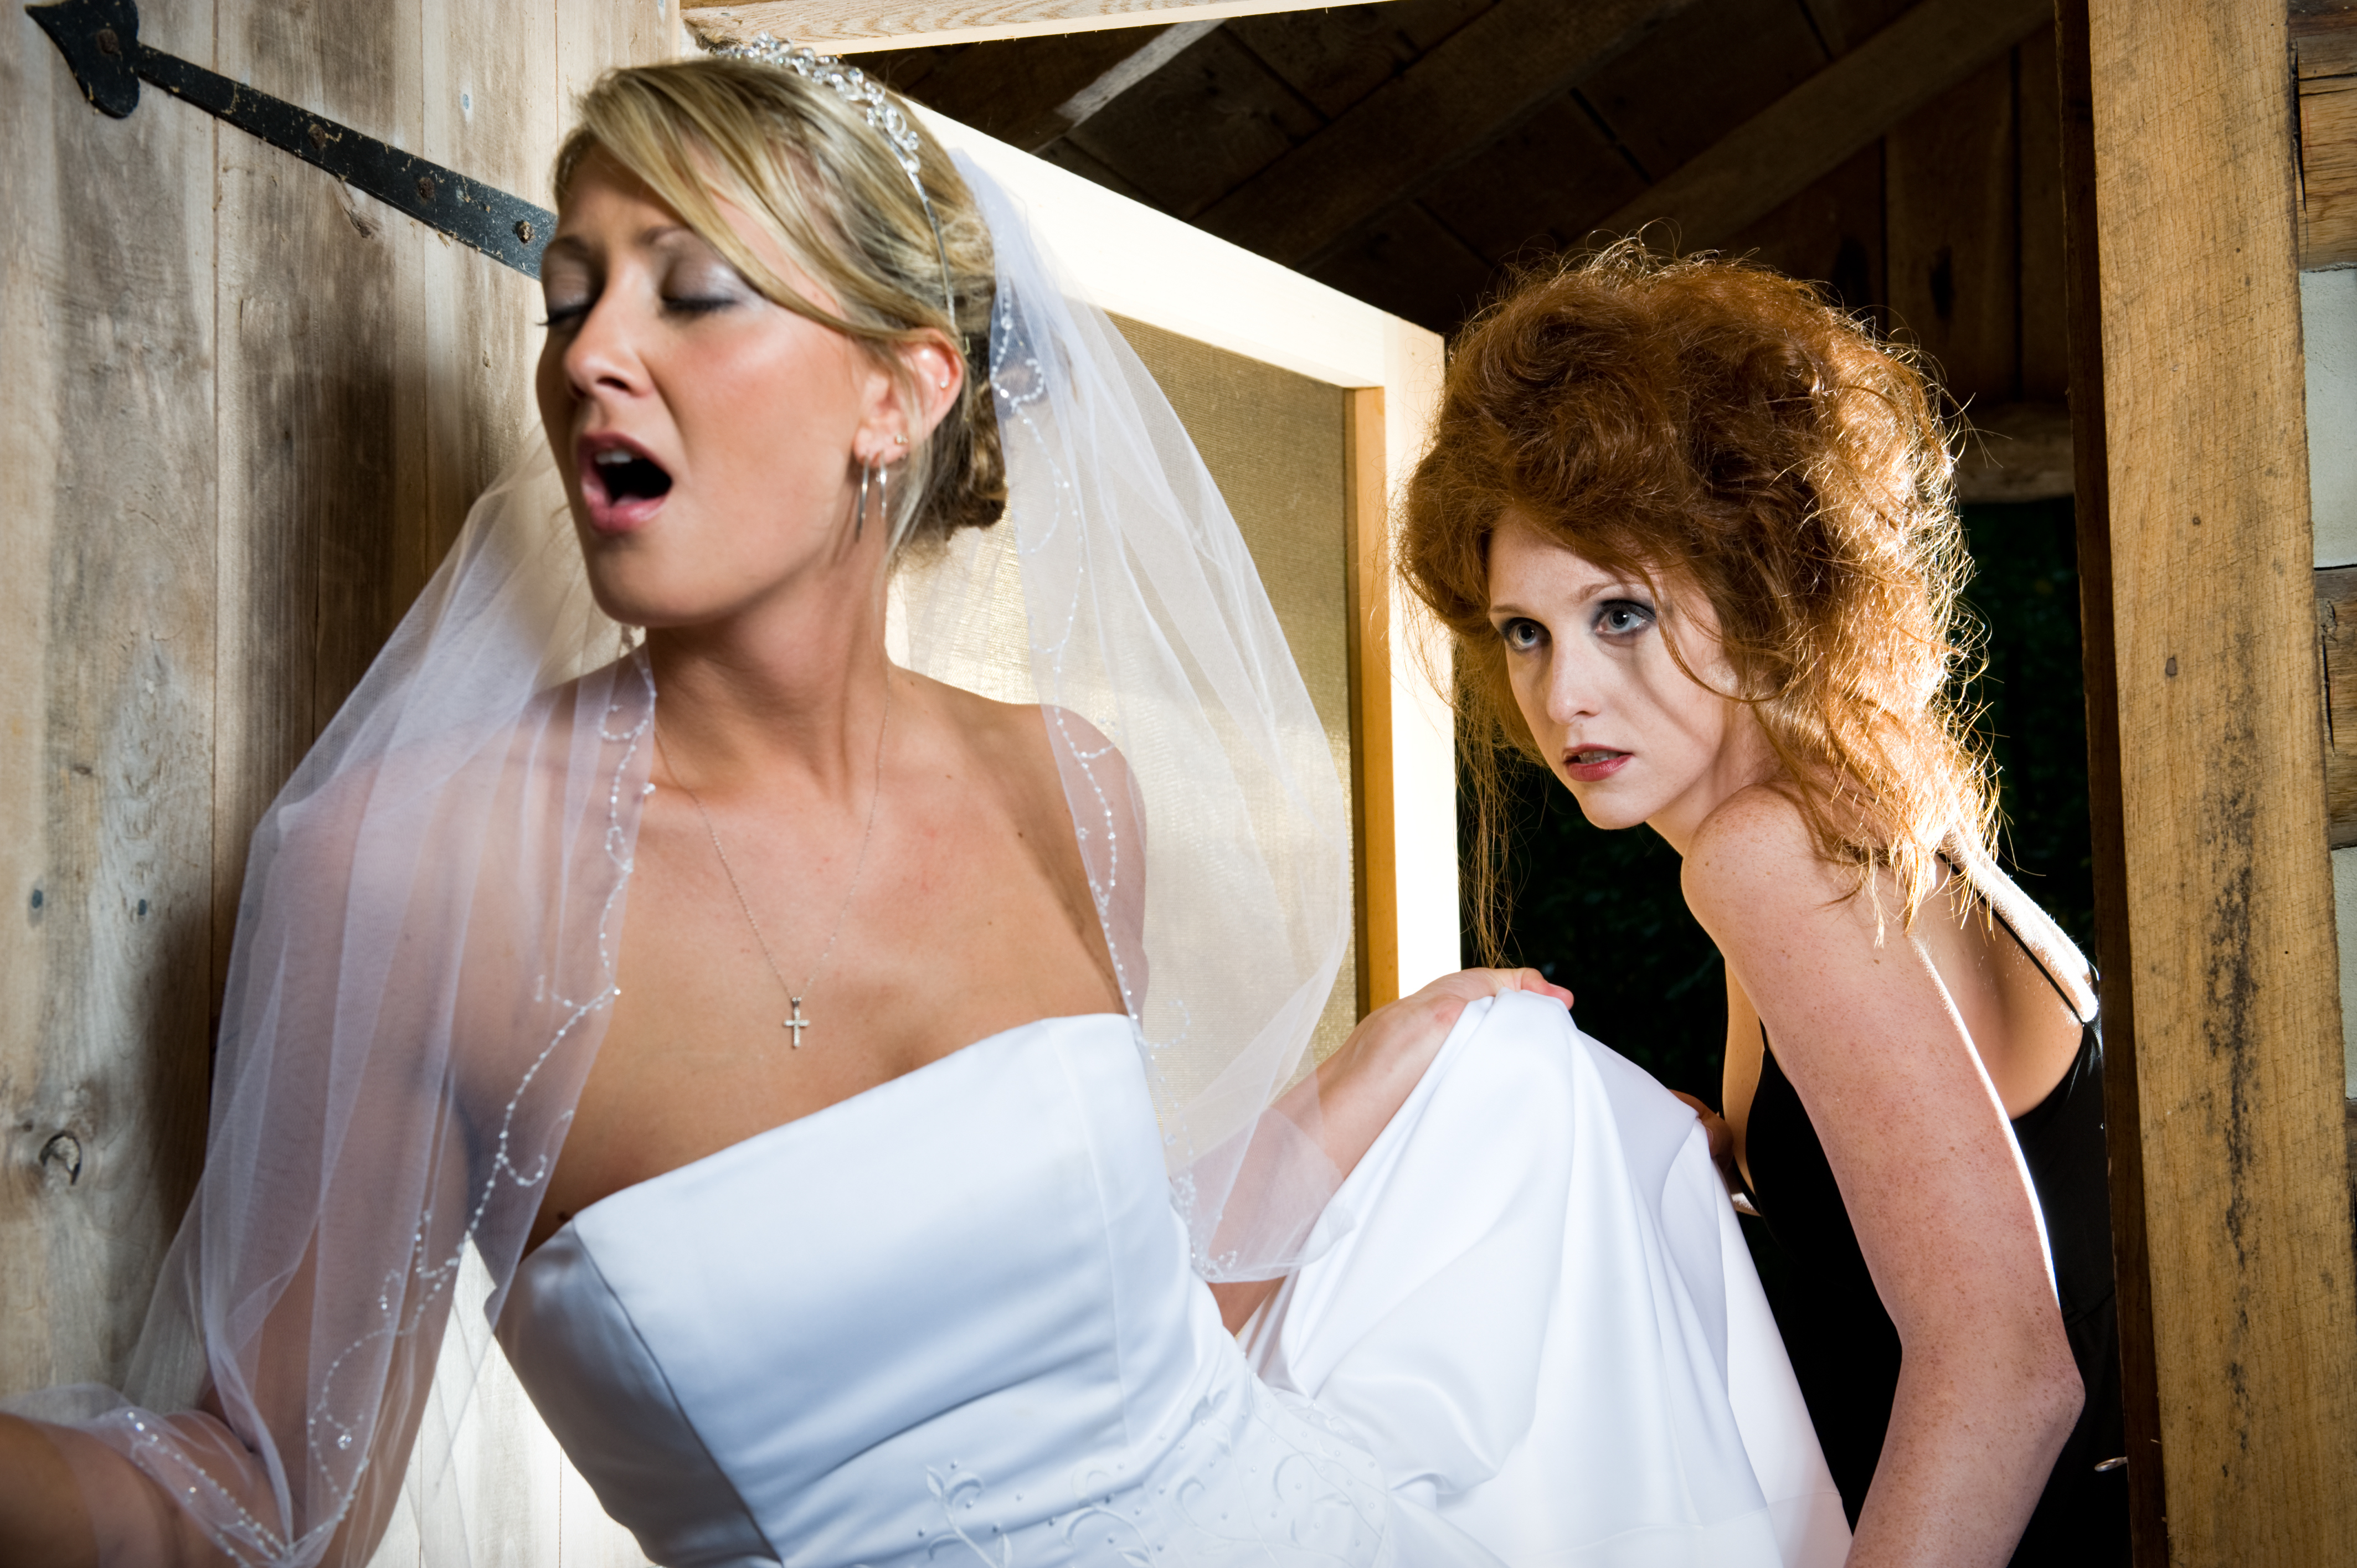 Une femme qui regarde fixement une mariée stressée | Source : Getty Images